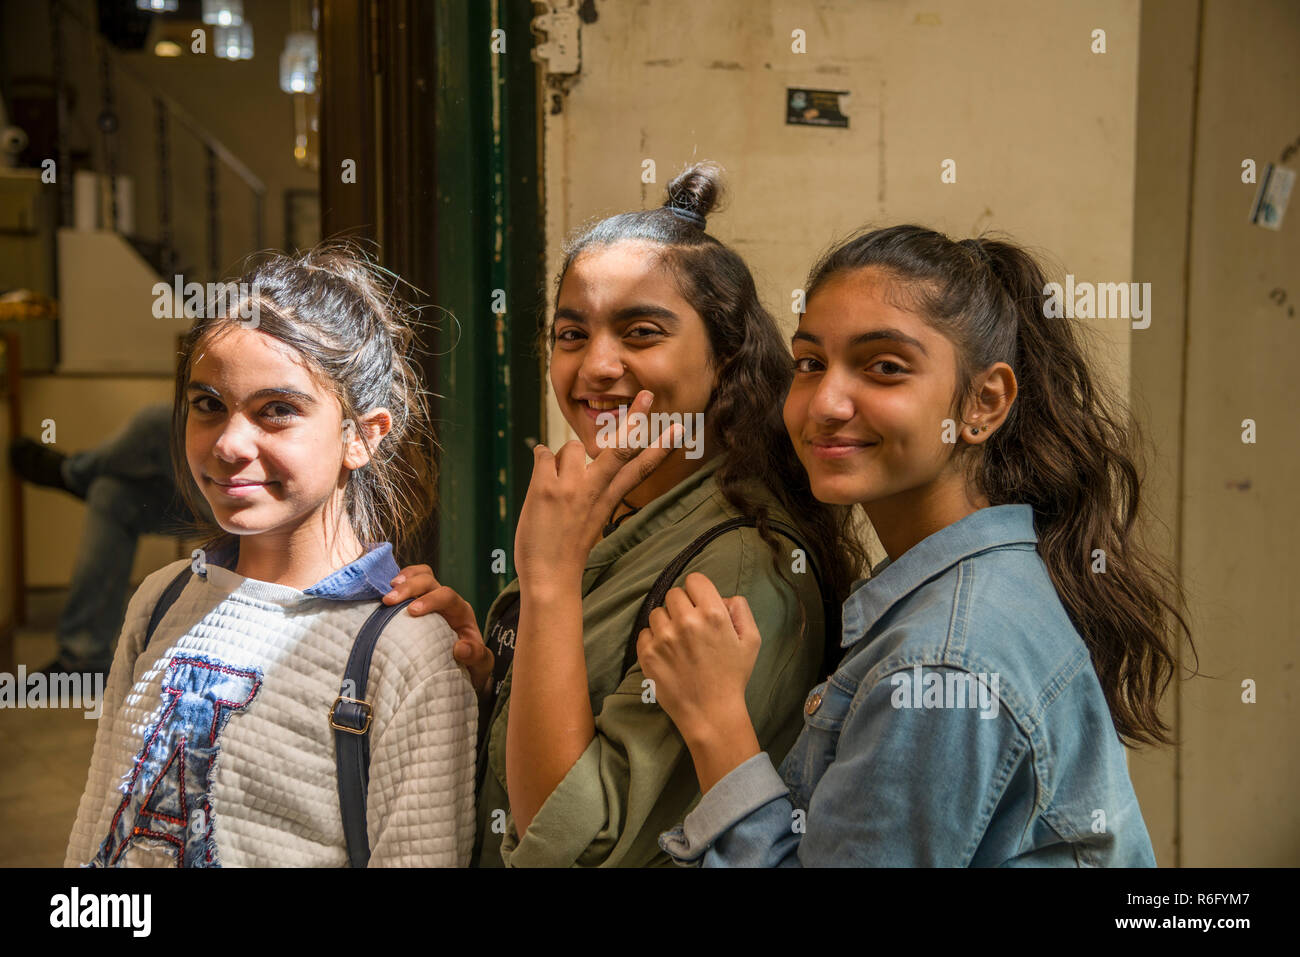 Nazareth, Israele -26 ottobre, 2018 : Tre ragazzi nel mercato vecchio a Nazareth, Israele Foto Stock